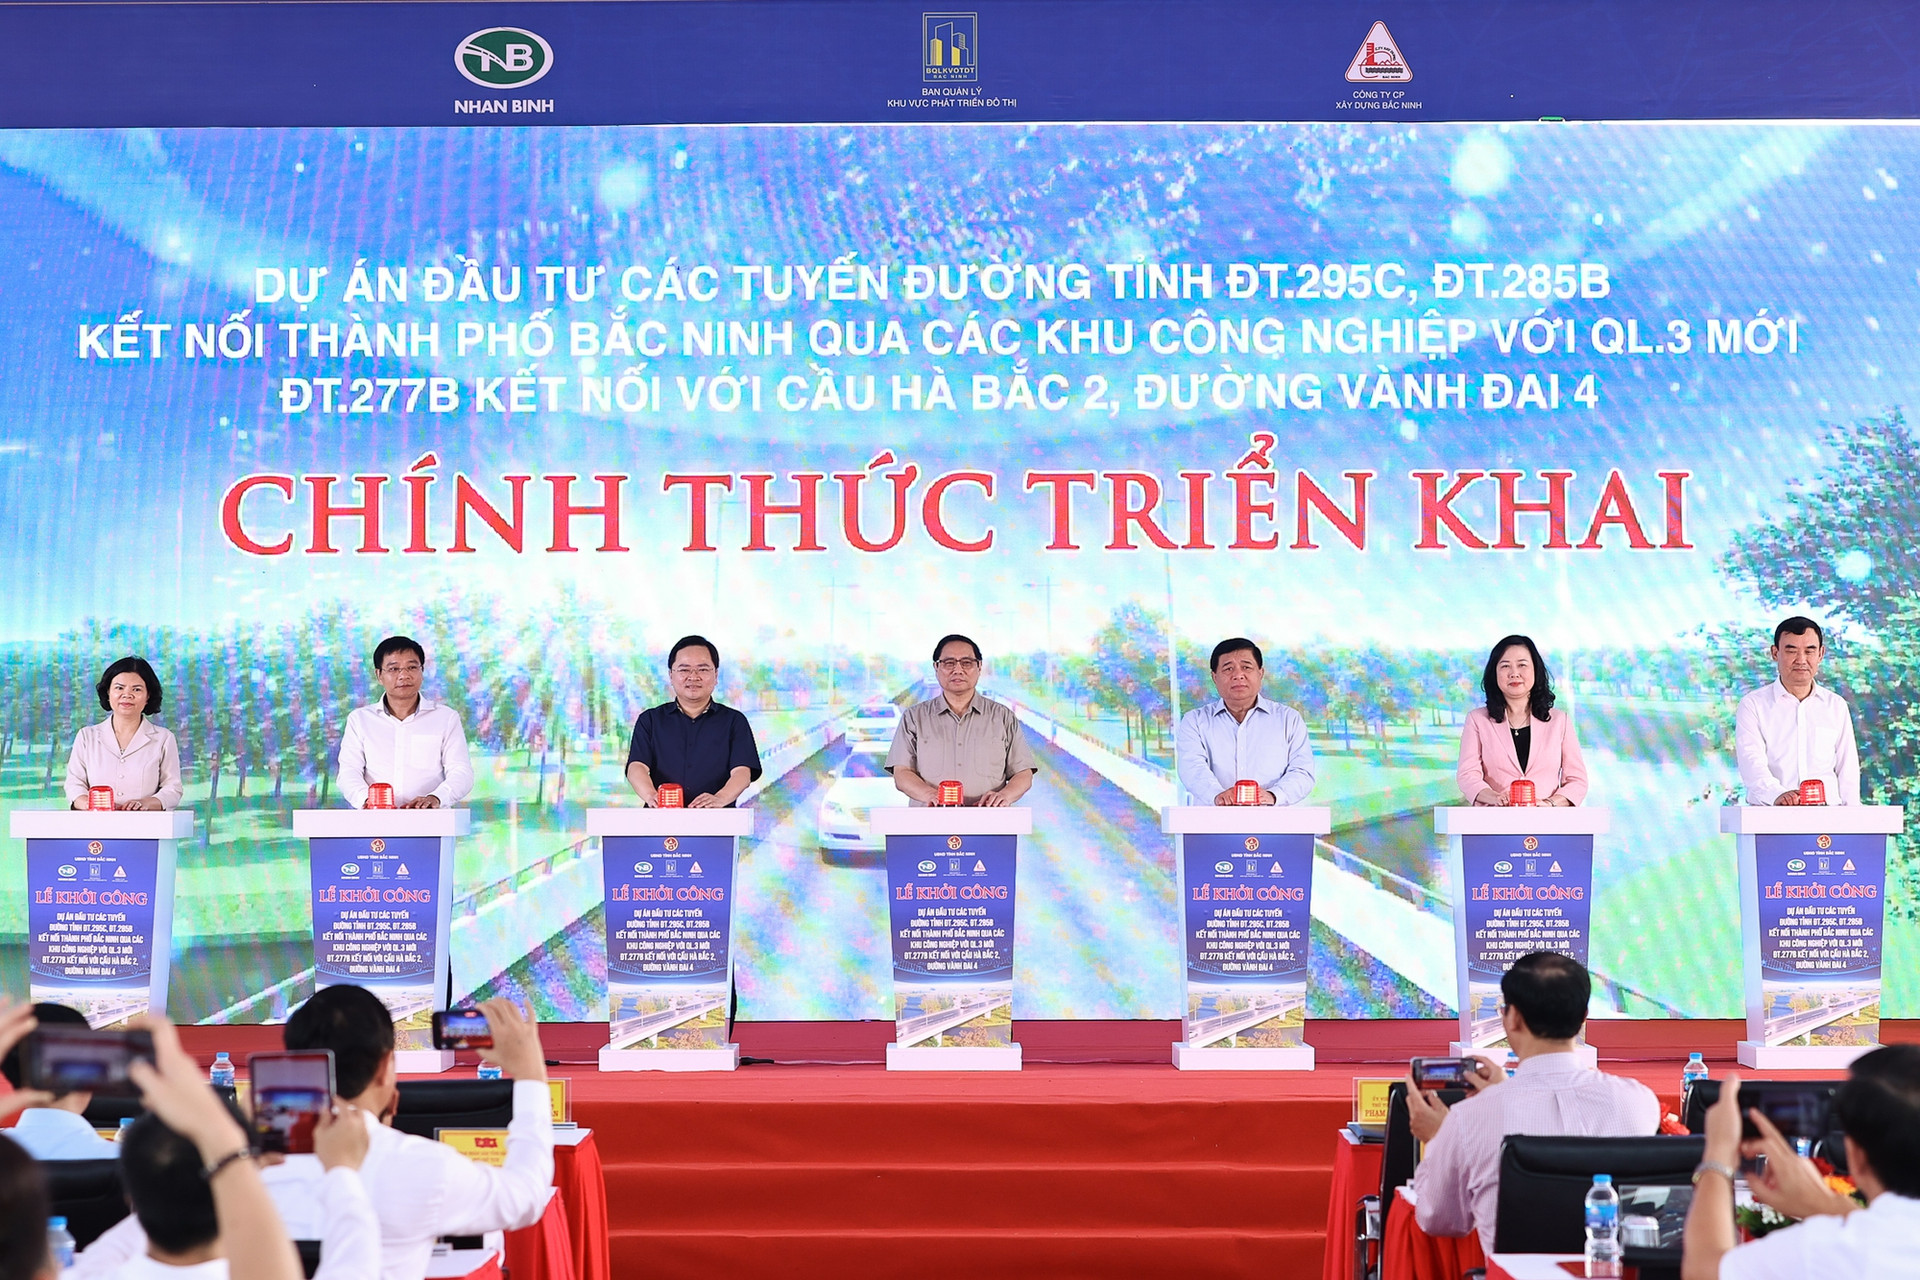 Thủ tướng dự lễ khởi công 3 tuyến đường có ý nghĩa lớn với Bắc Ninh và Hà Nội - Ảnh 1.